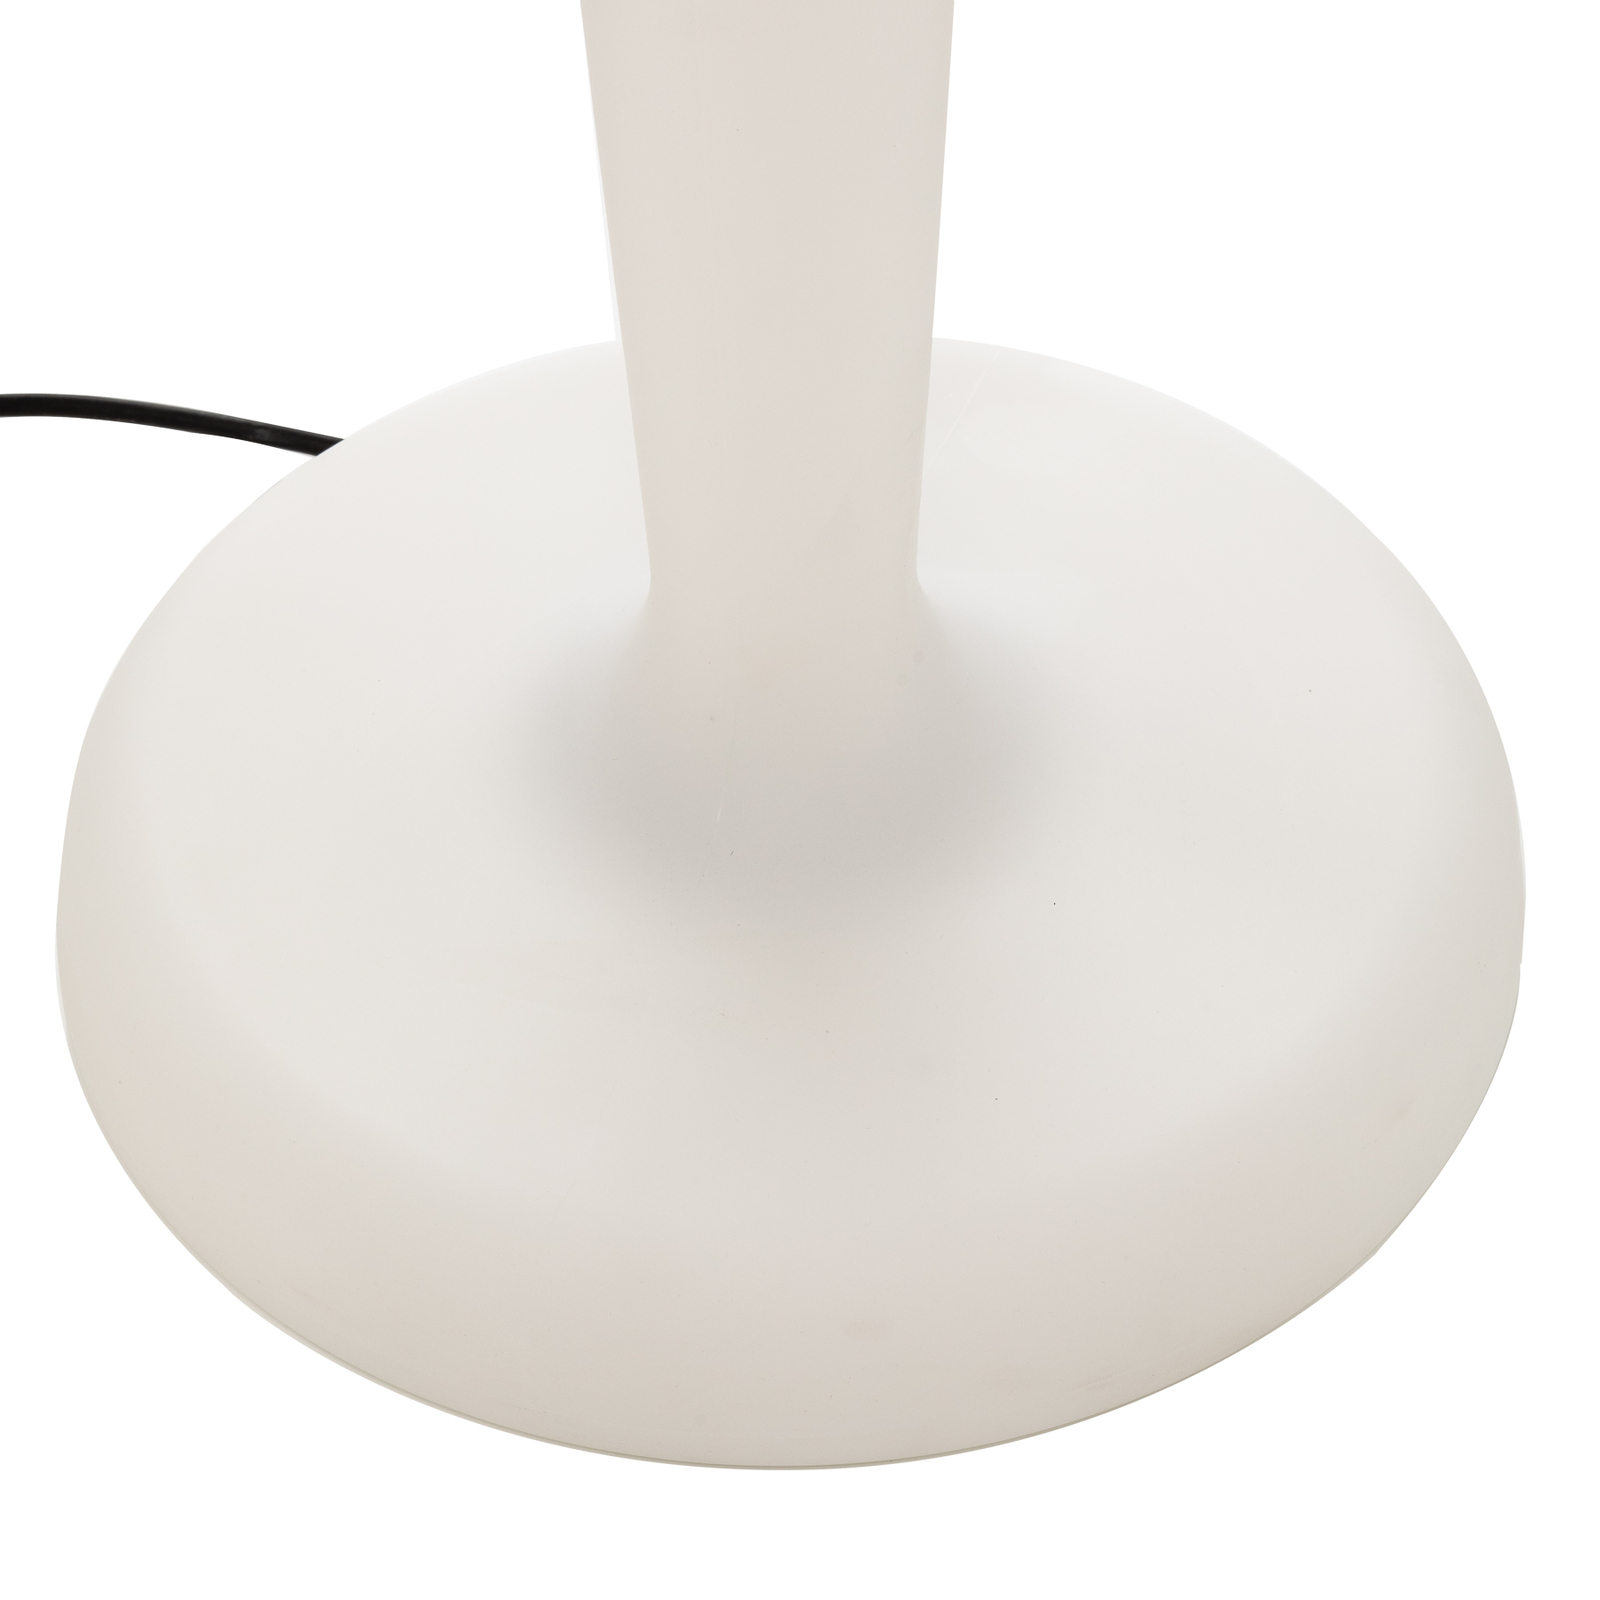 White PEGGY designer floor lamp for outdoors, E27